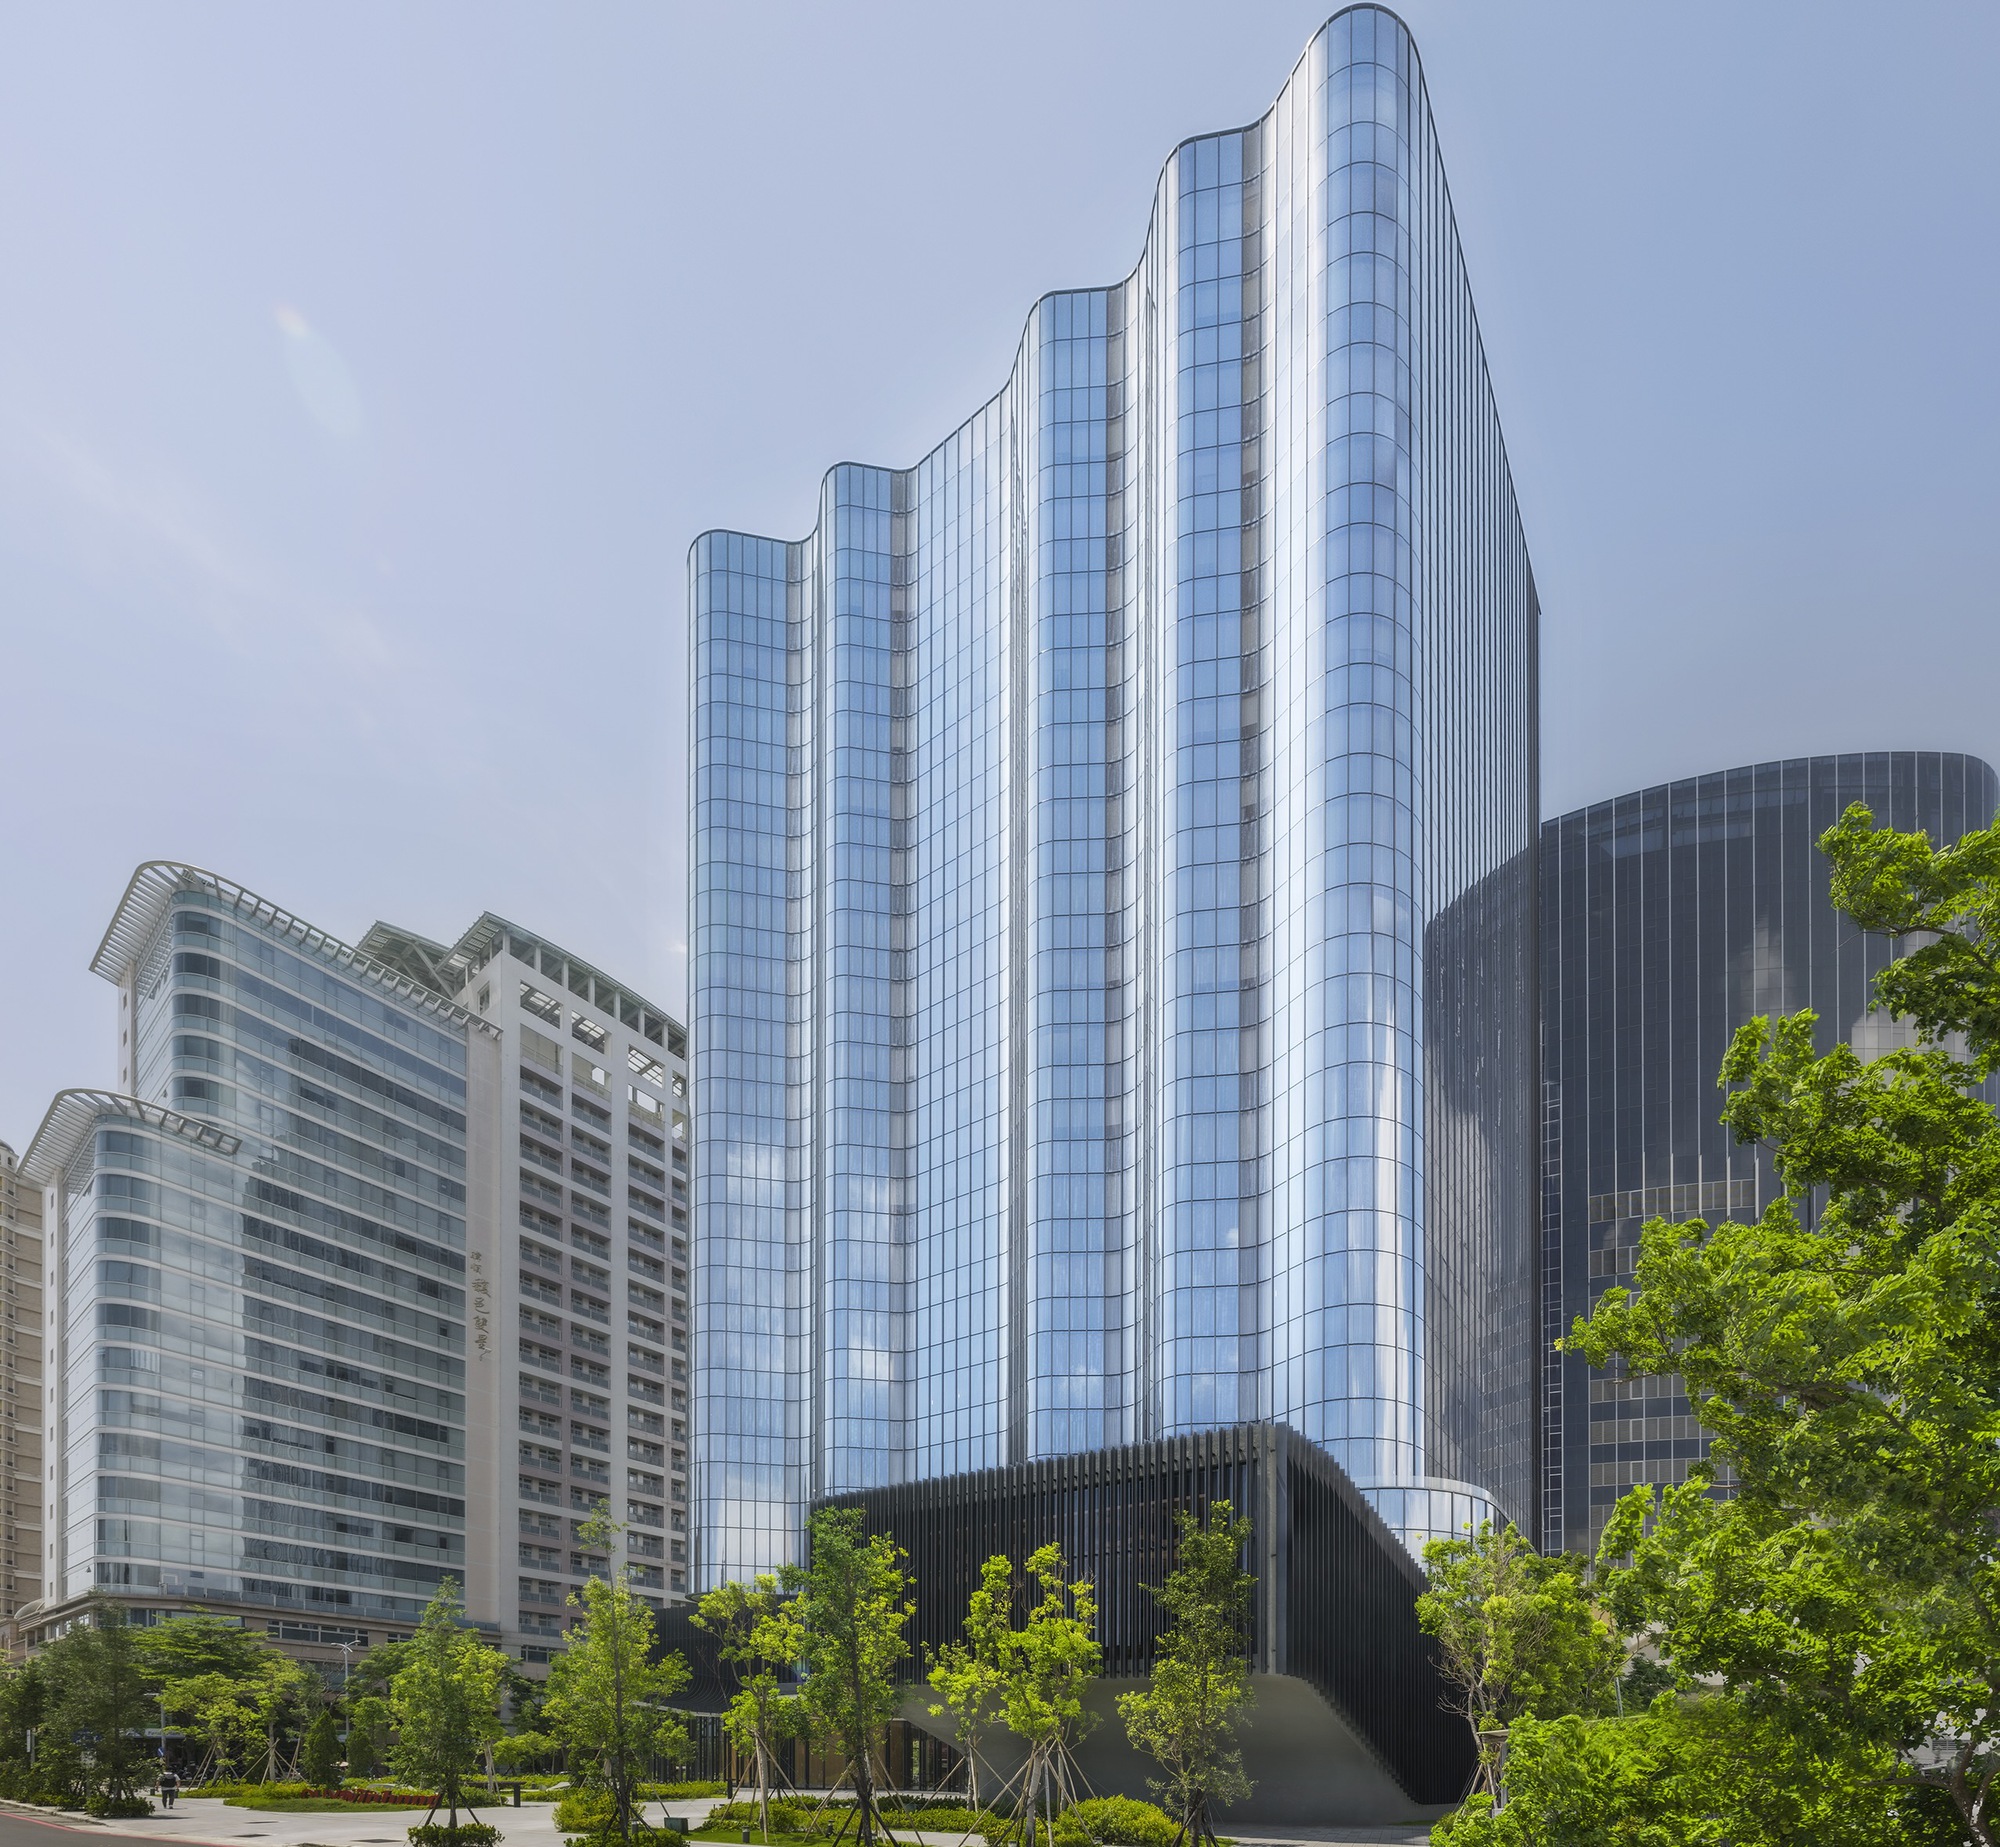 شرکت Winbond Electronics ساختمان Zhubei / XRANGE Architects